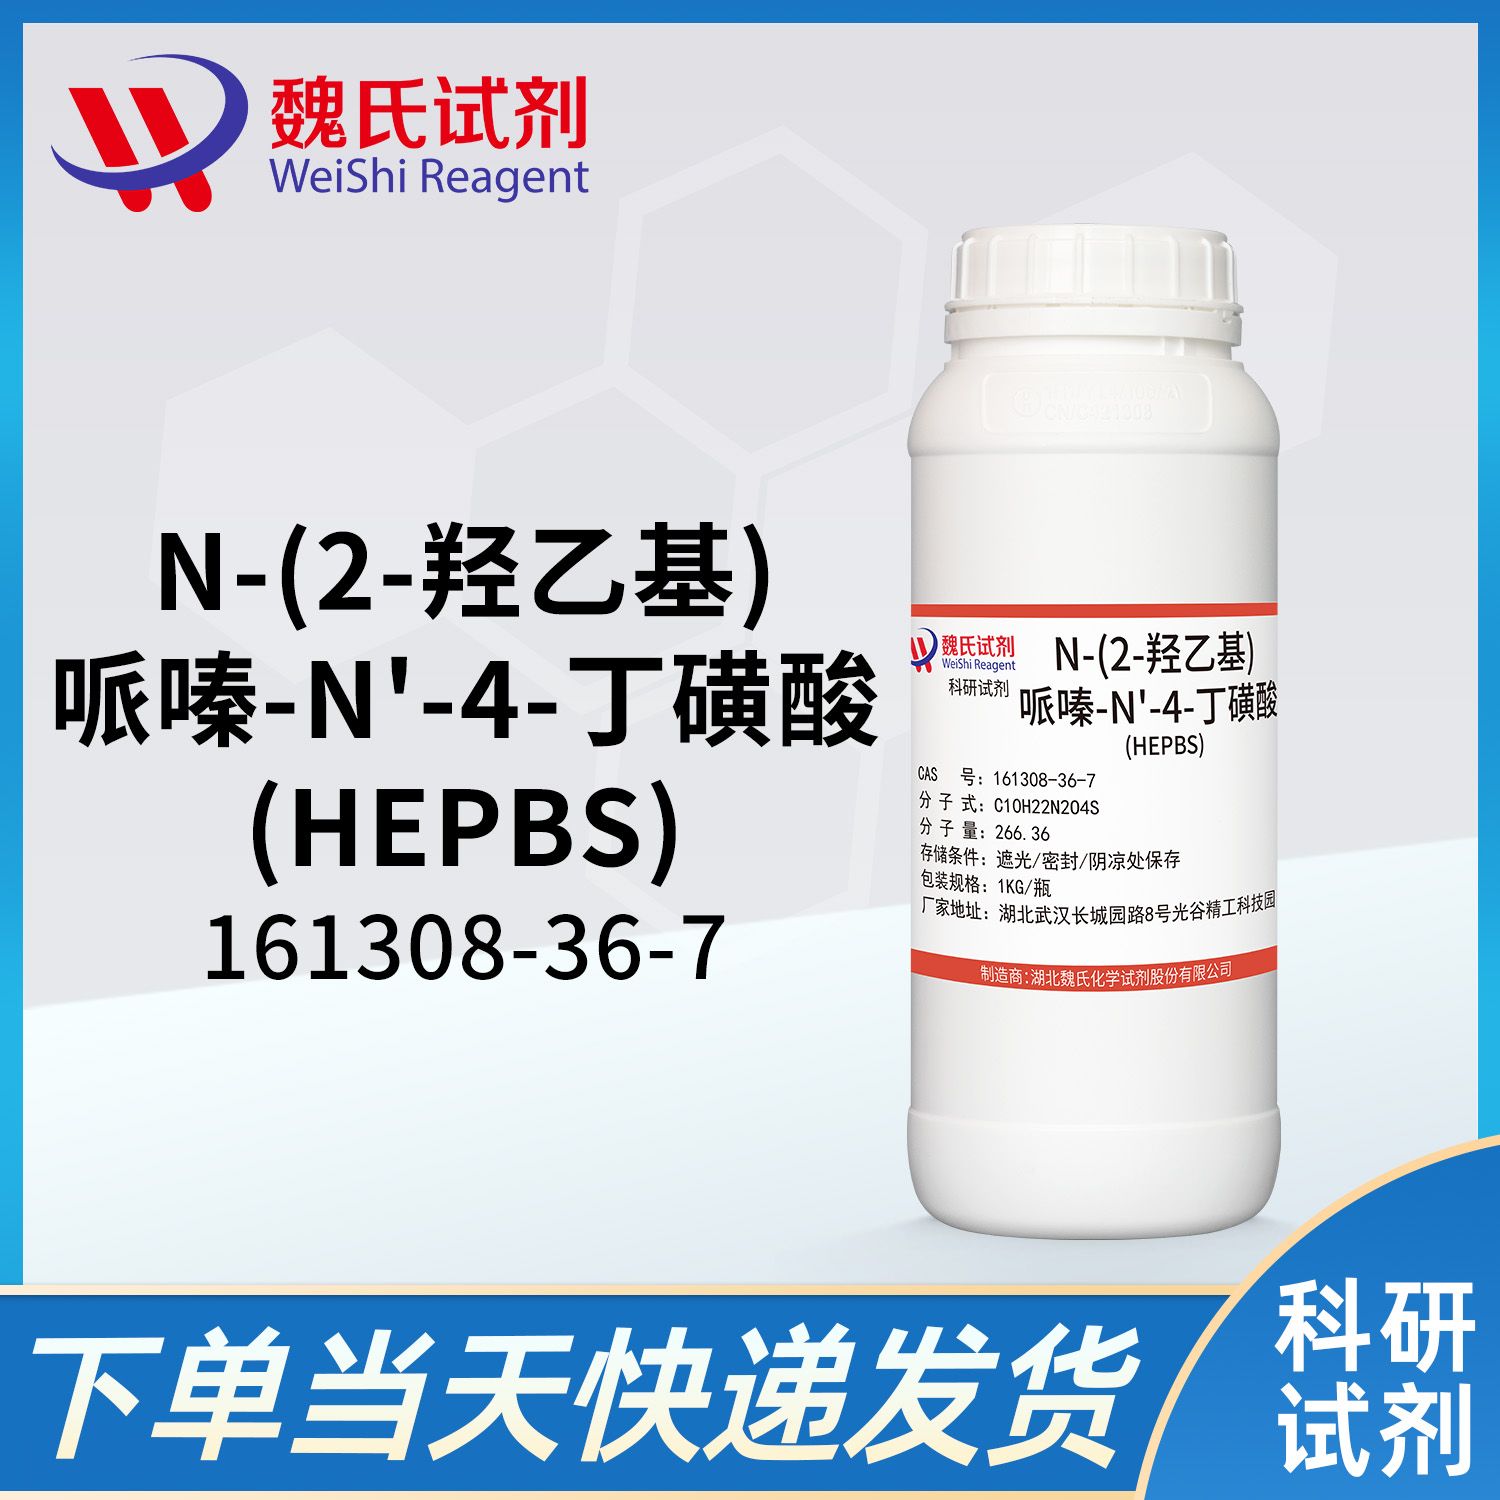 N-(2-羟乙基)哌嗪-N'-(4-丁磺酸)—161308-36-7